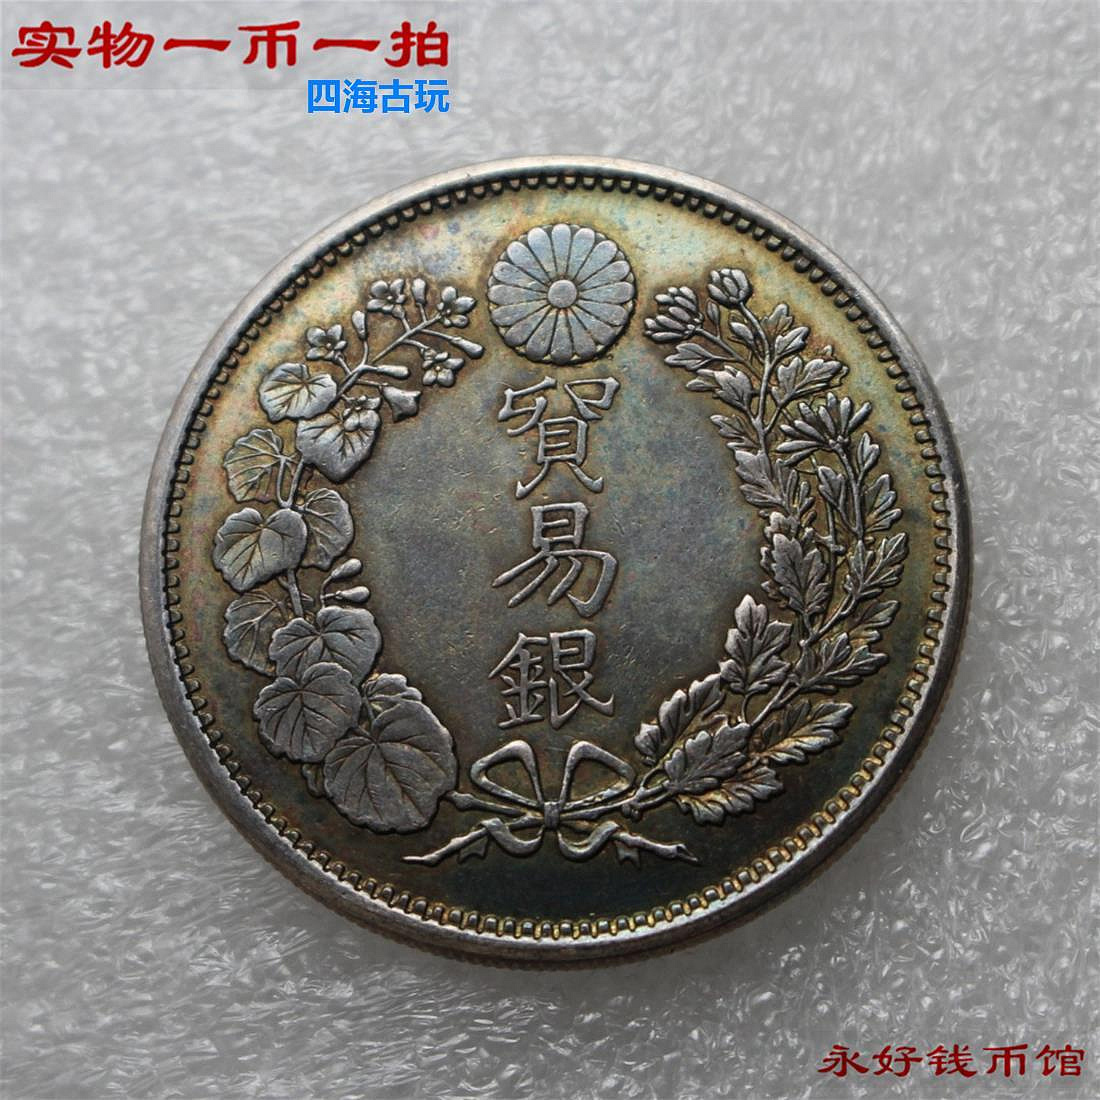 一幣一拍 醬藍彩包漿銀幣日本貿易銀十年明治一圓 純銀精致制品2